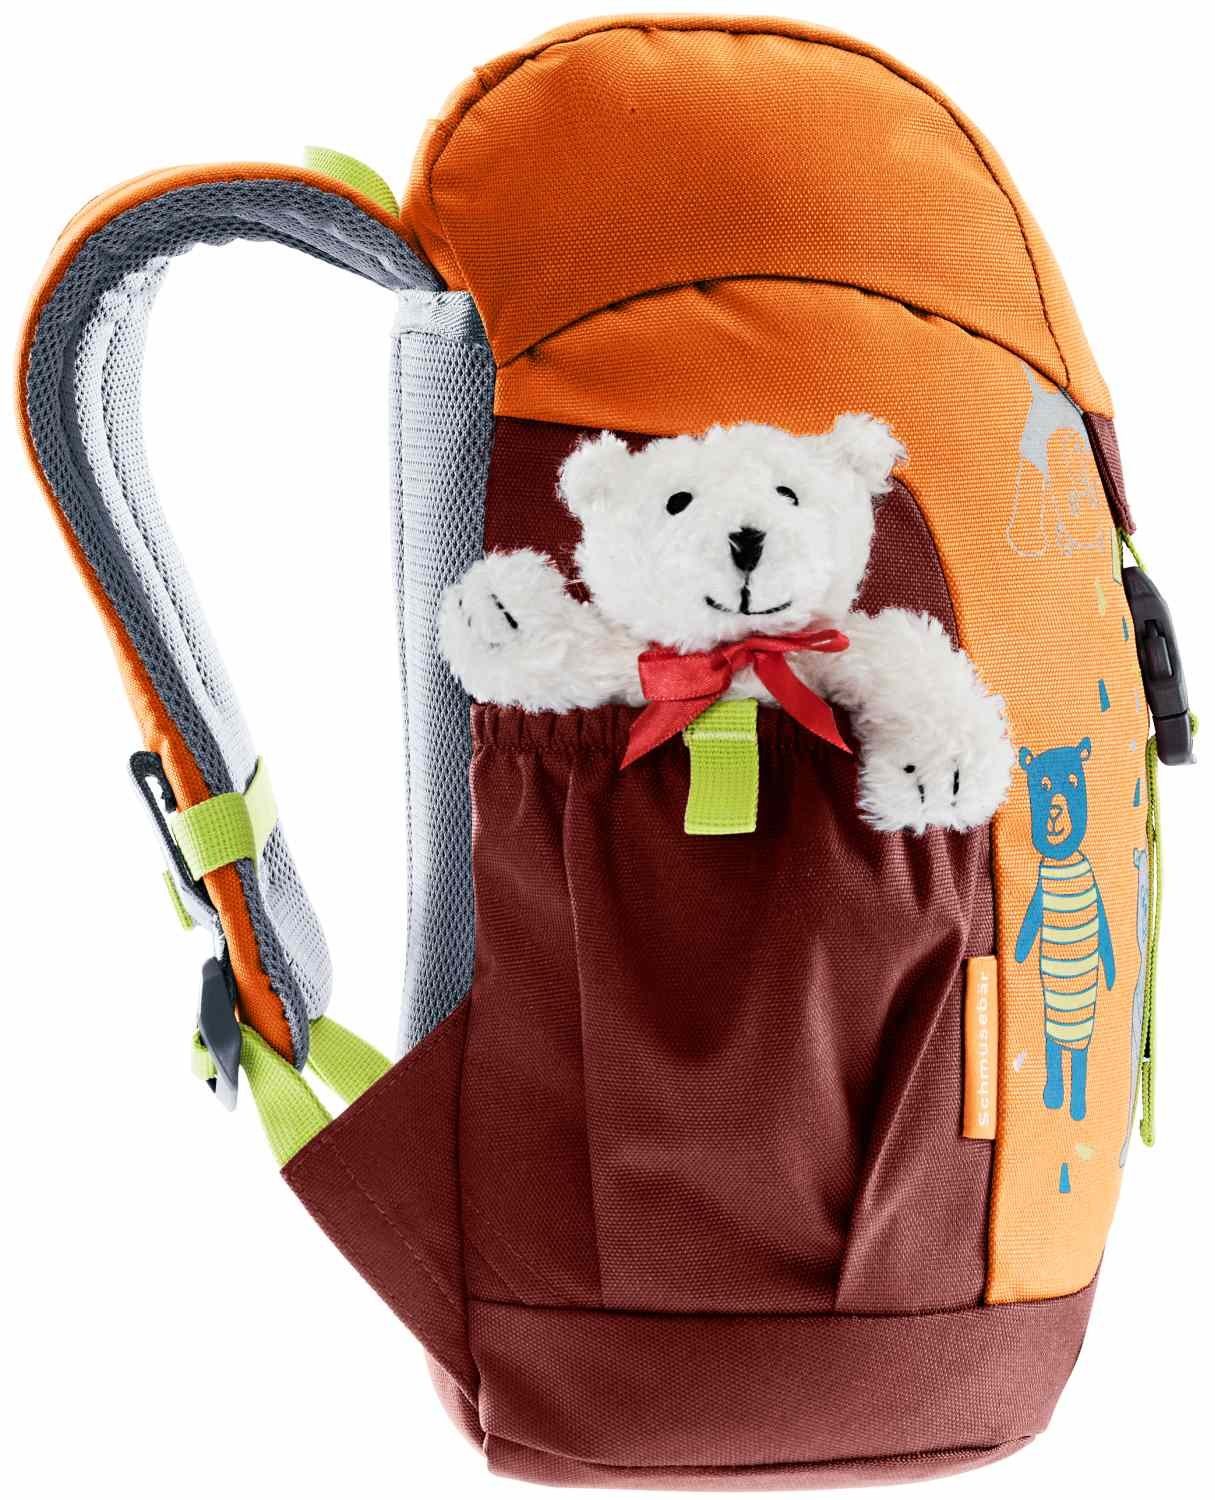 deuter deuter Babystiefel Kinderrucksack mandarine-redwood Schmusebär mit Teddybär